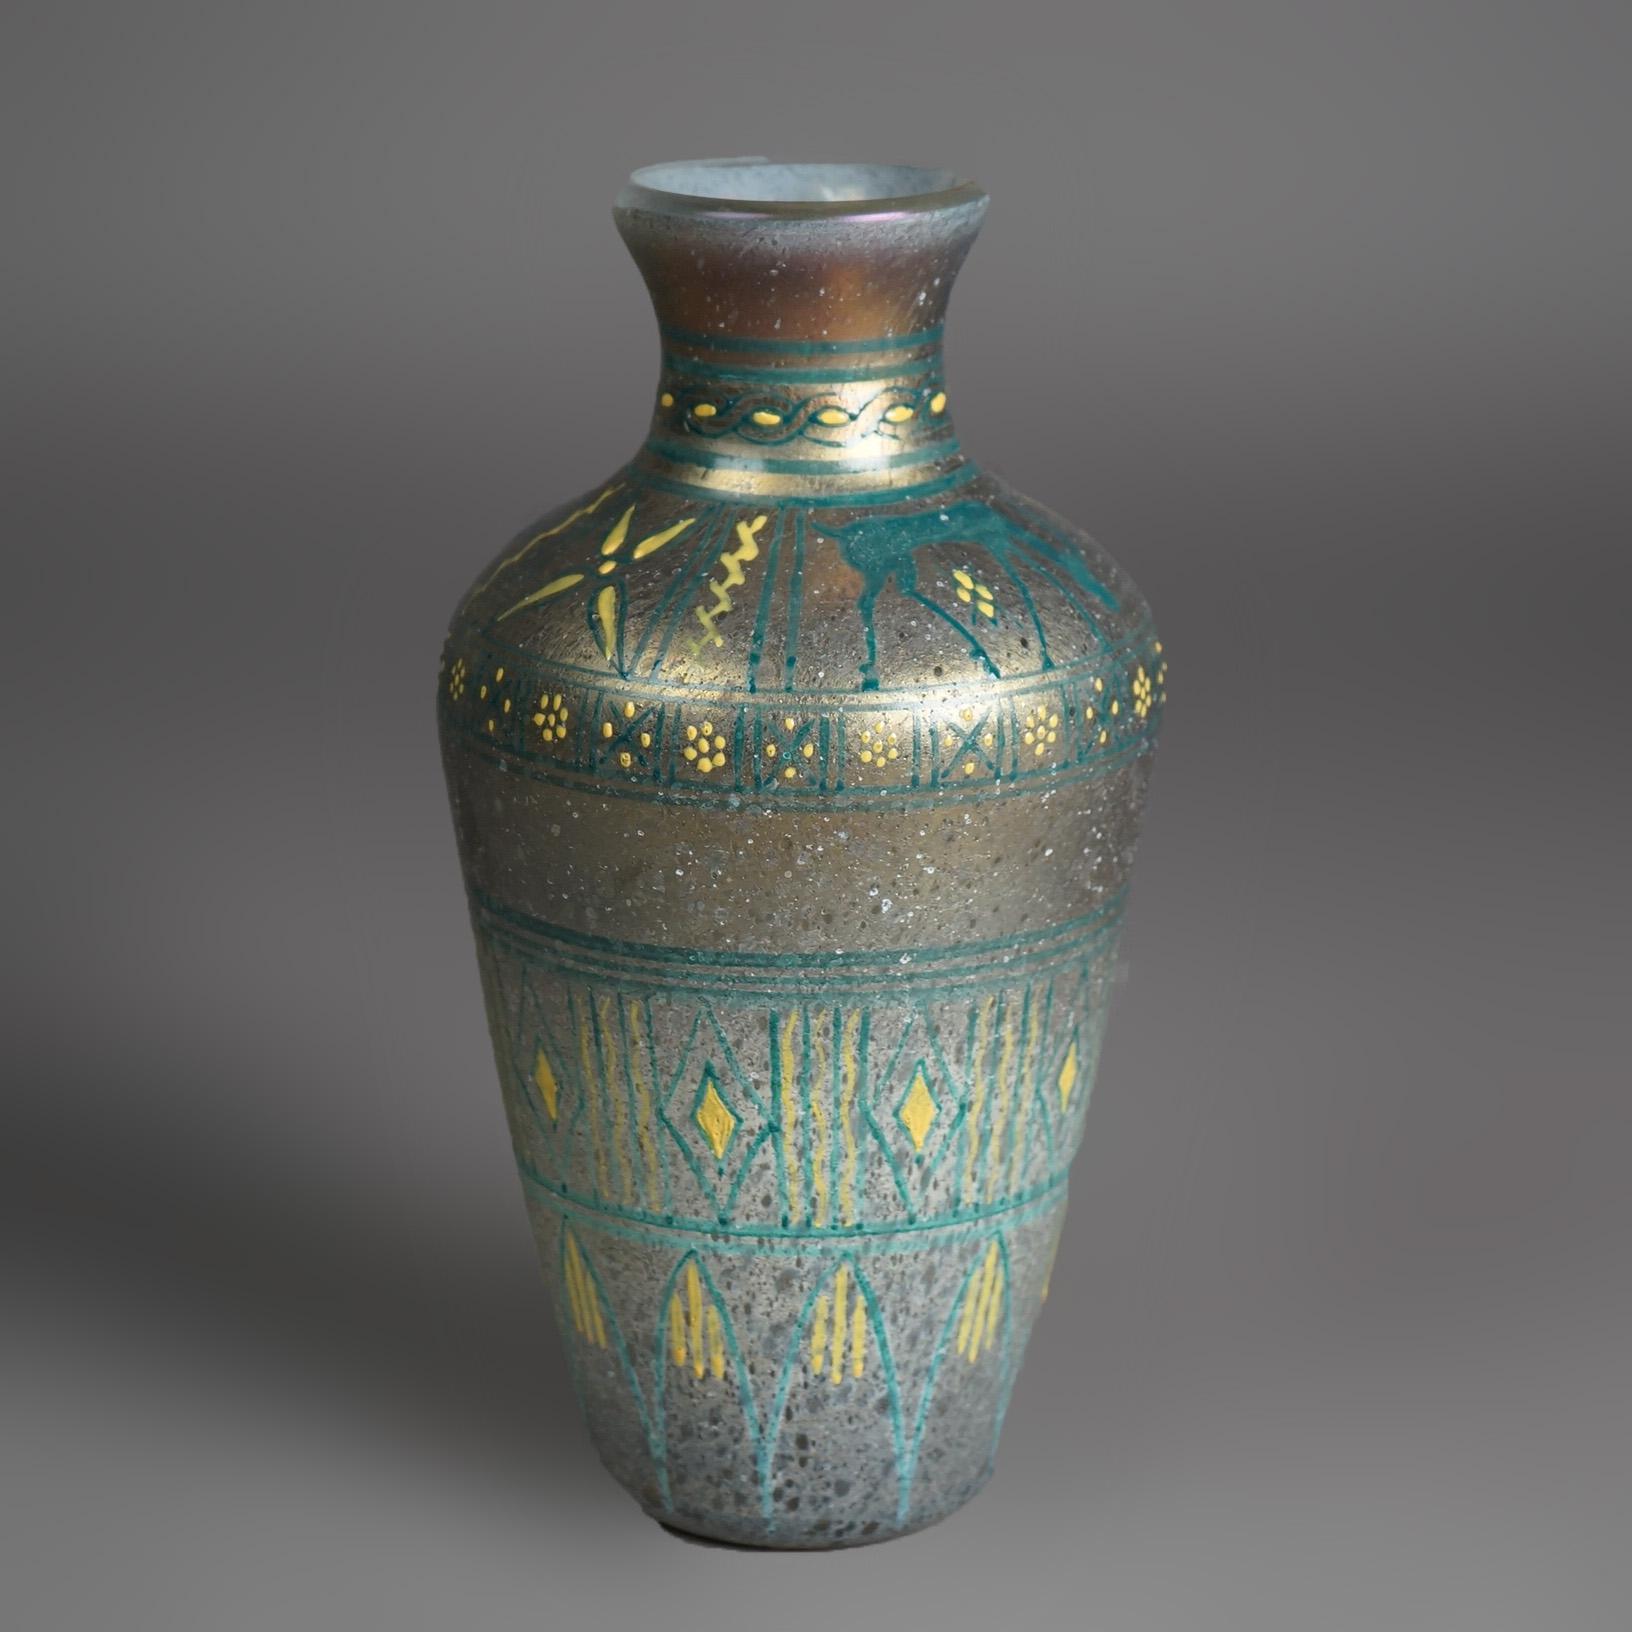 Un ancien vase figural Arte Antiques offre du verre d'art avec un design tribal peint à la main et une figure d'antilope, vers 1900.

Dimensions - 9,5 